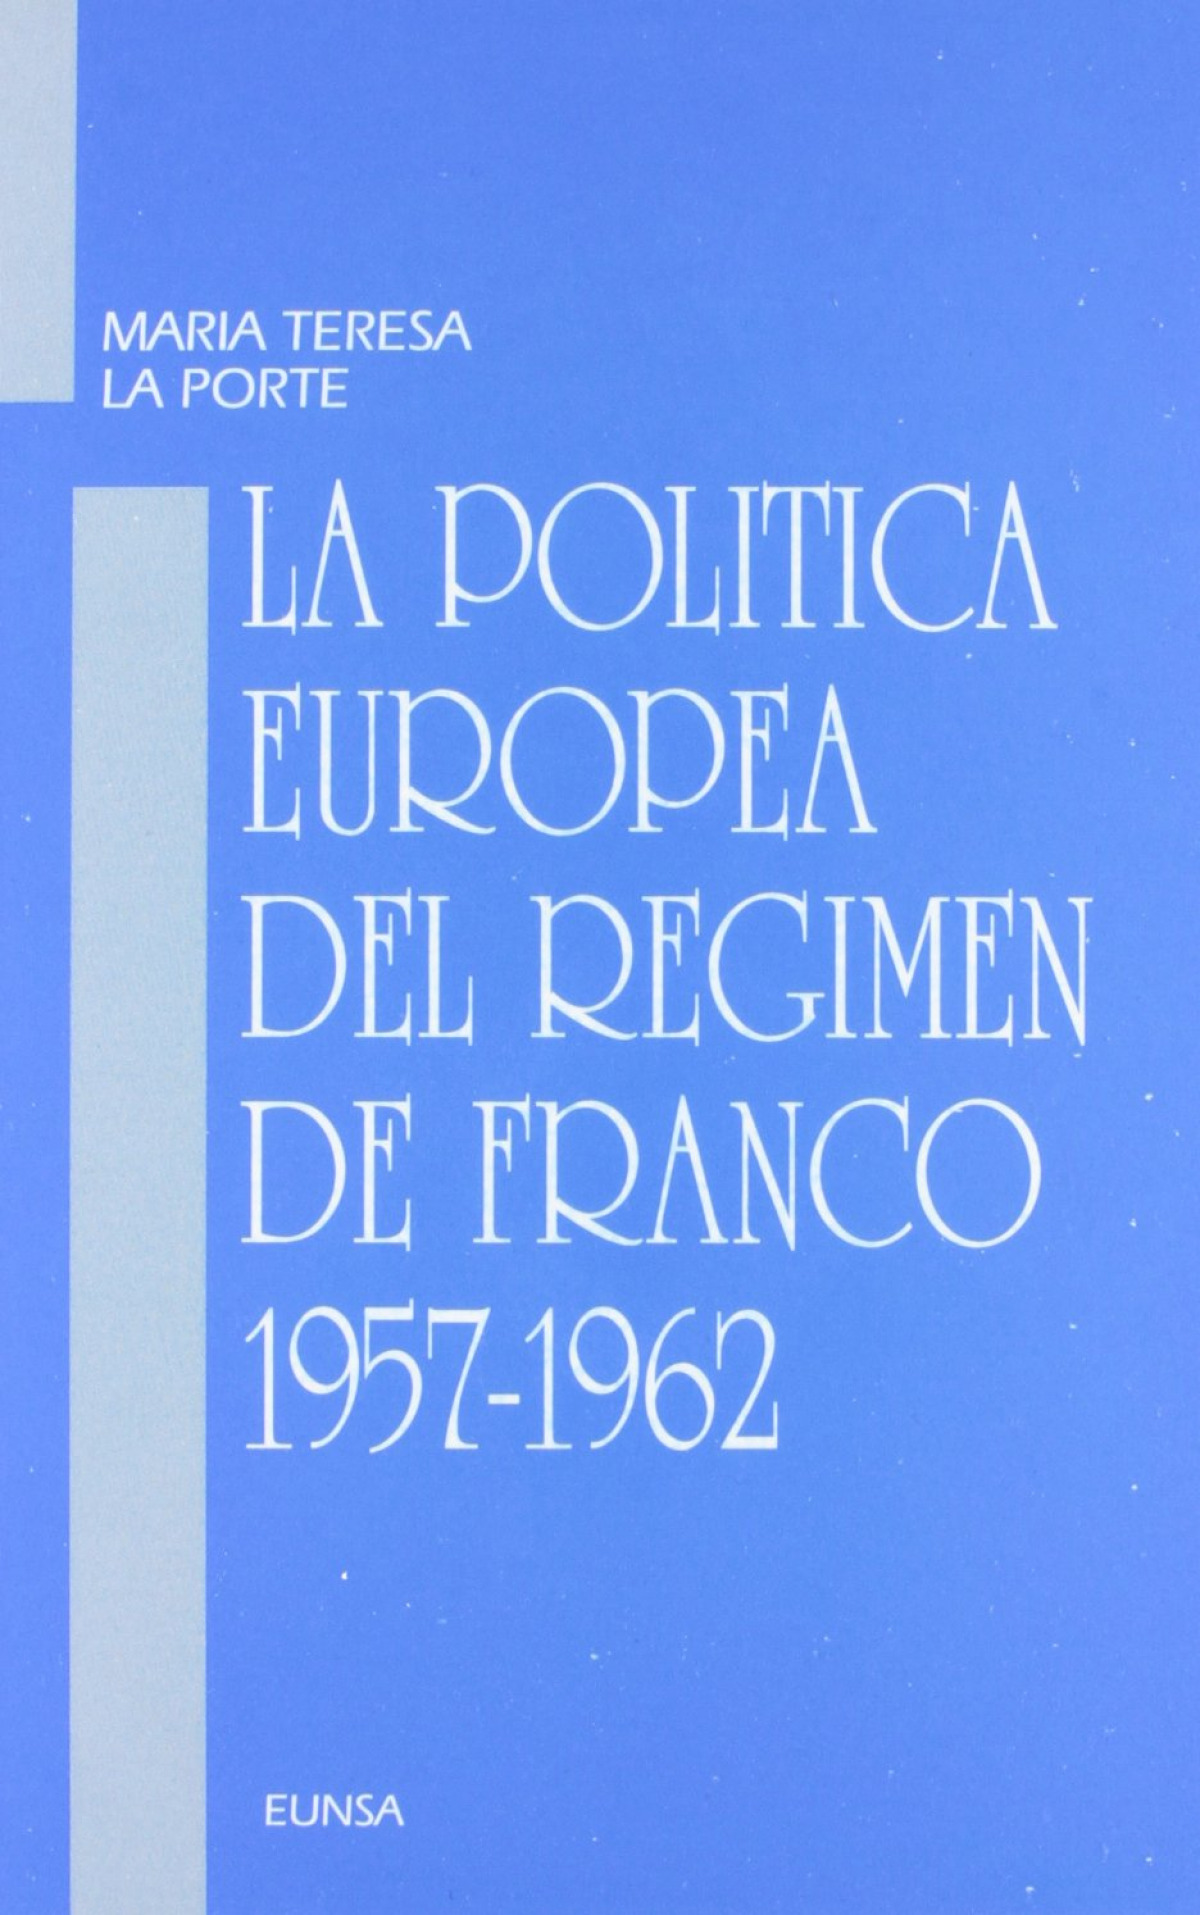 La política europea del régimen de Franco, 1957-1962 1957-1962 - La Porte, María Teresa